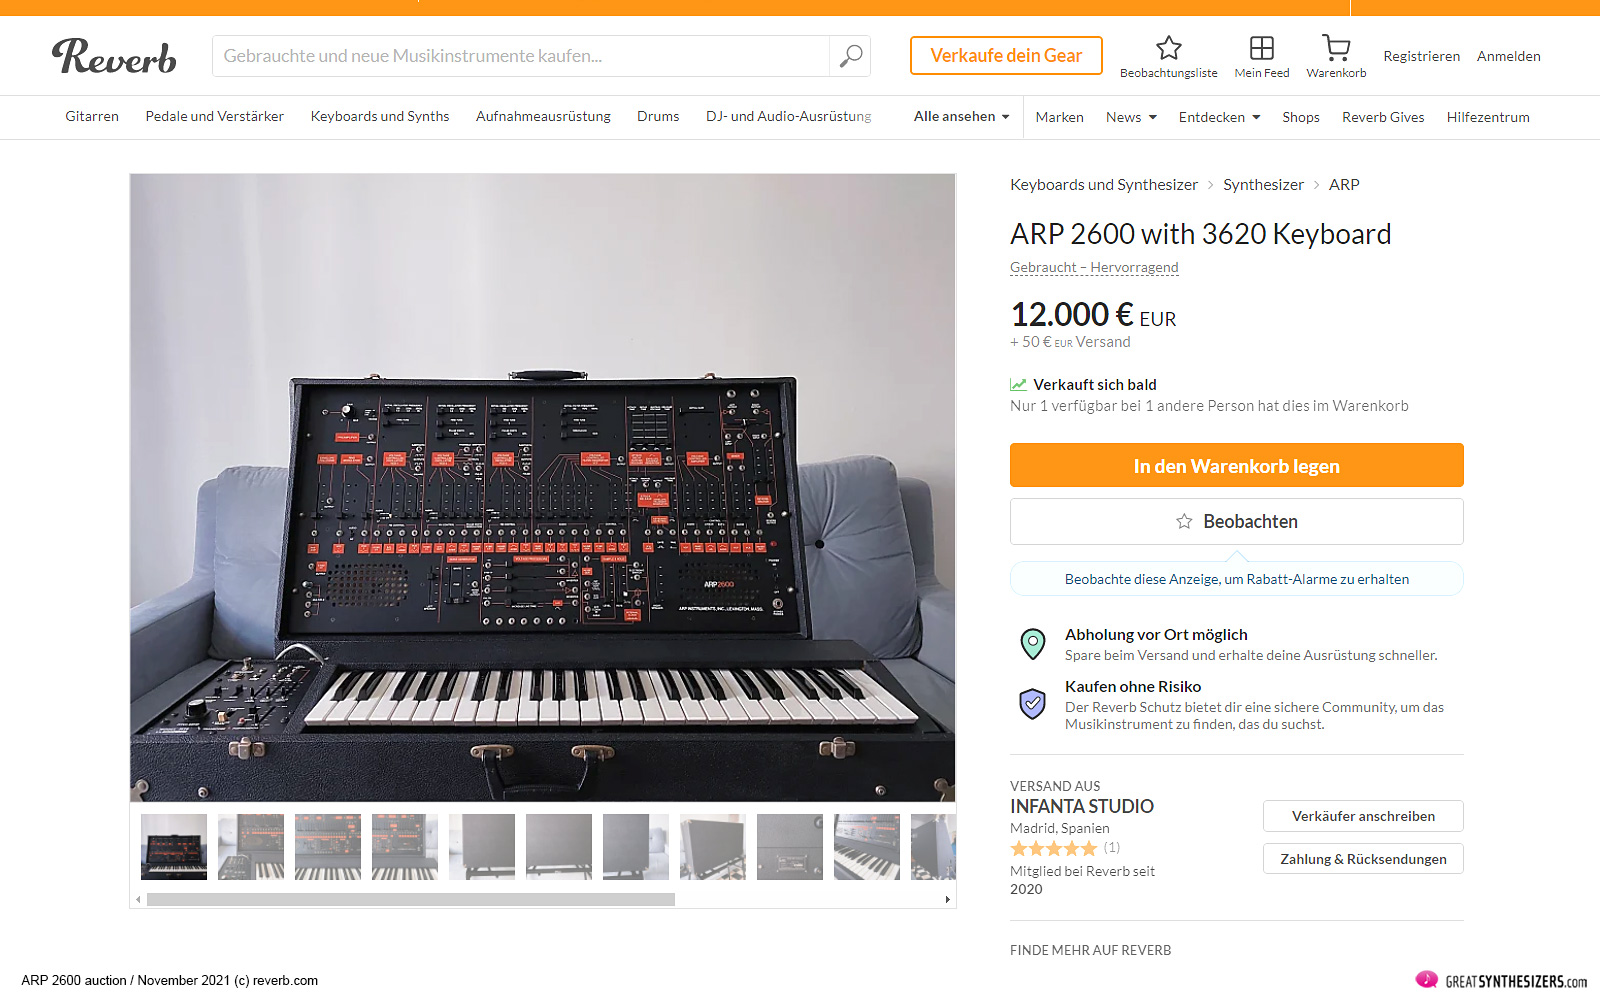 ARP 2600 Synthesizer auction November 2021